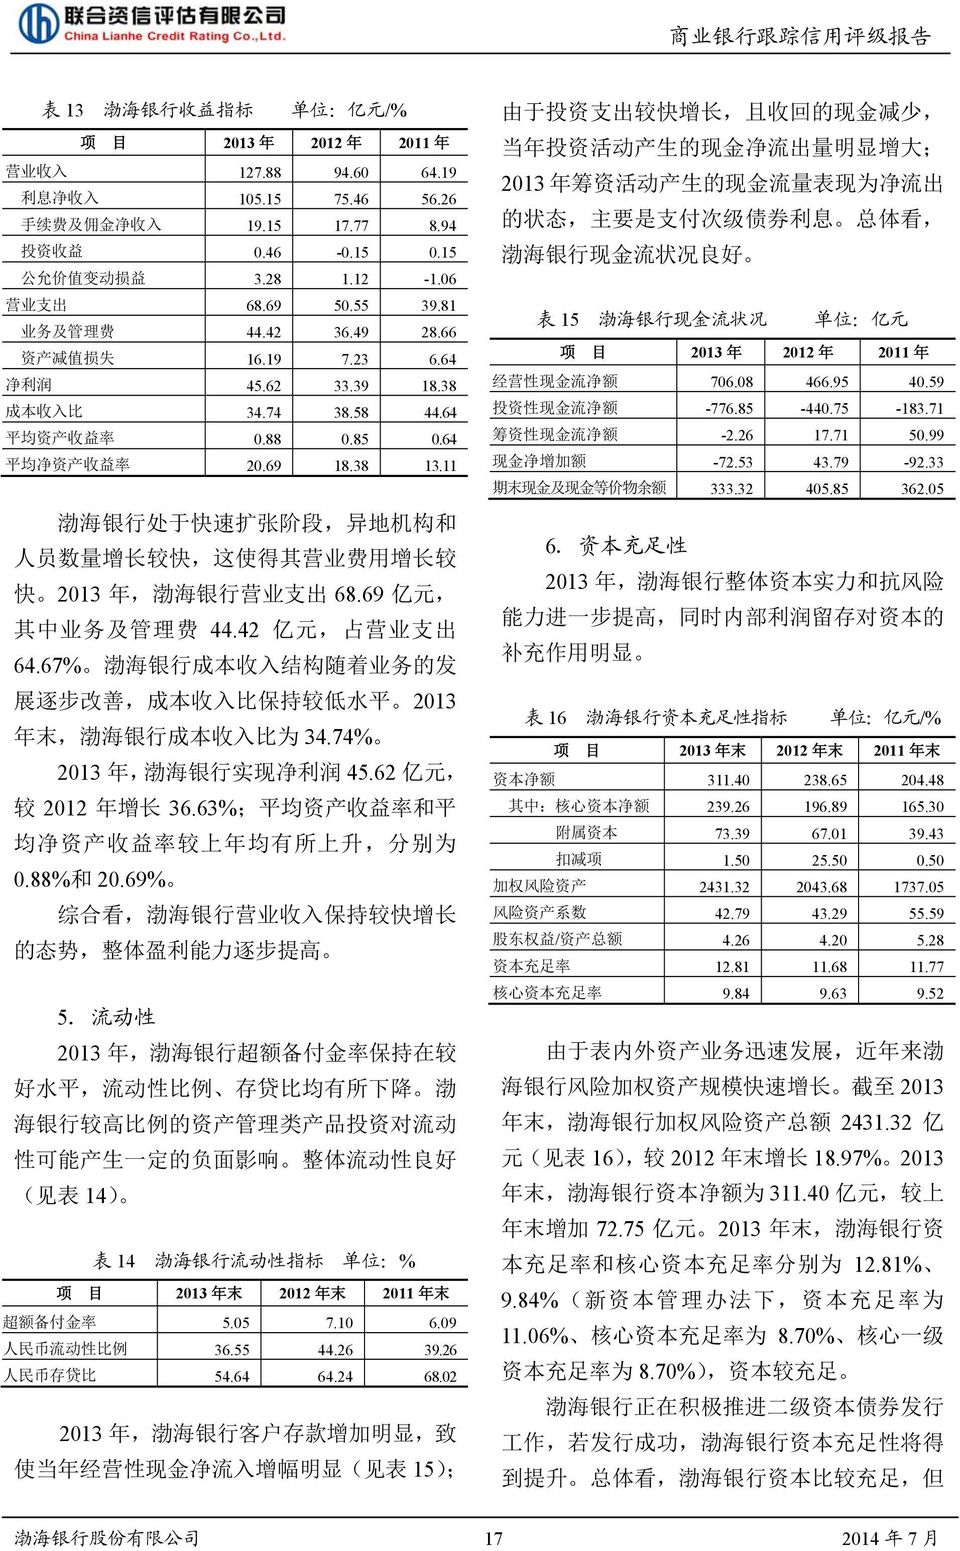 38 13.11 渤 海 银 行 处 于 快 速 扩 张 阶 段, 异 地 机 构 和 人 员 数 量 增 长 较 快, 这 使 得 其 营 业 费 用 增 长 较 快 2013 年, 渤 海 银 行 营 业 支 出 68.69 亿 元, 其 中 业 务 及 管 理 费 44.42 亿 元, 占 营 业 支 出 64.